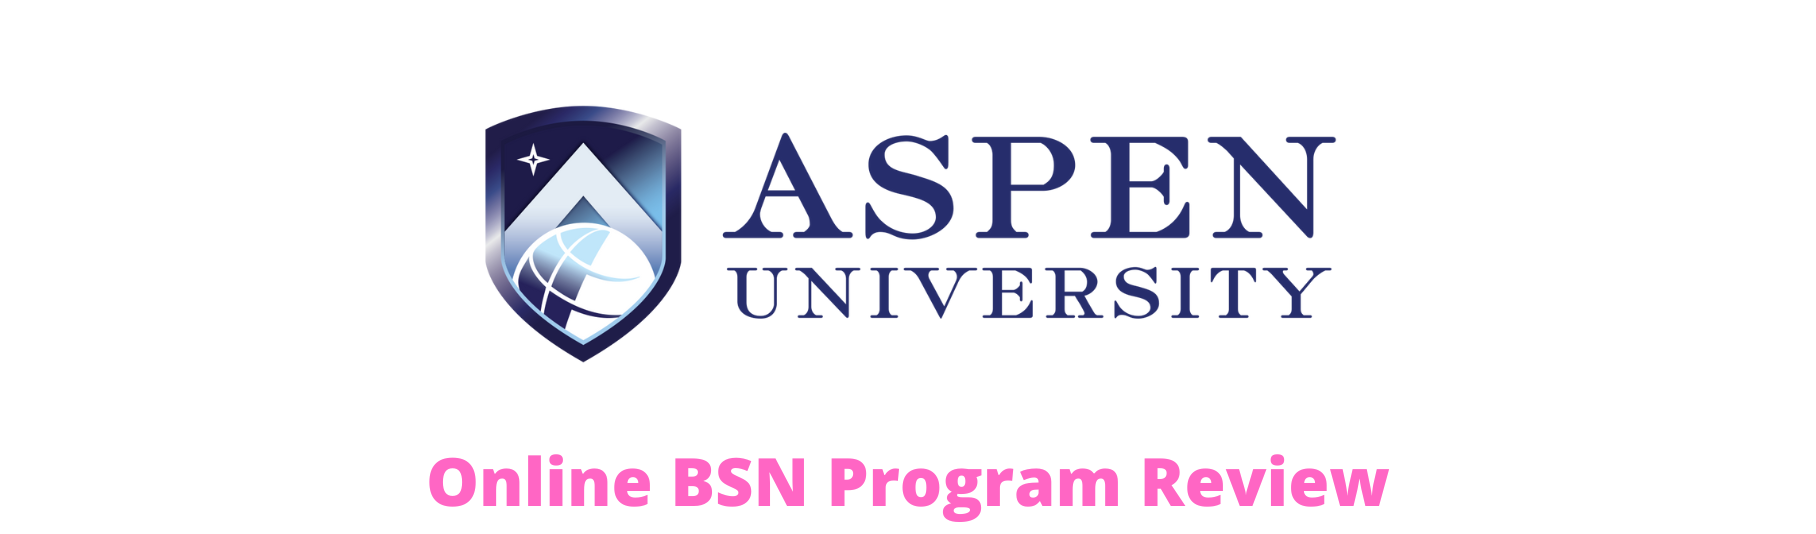 Aspen University Online BSN Program Review 2022